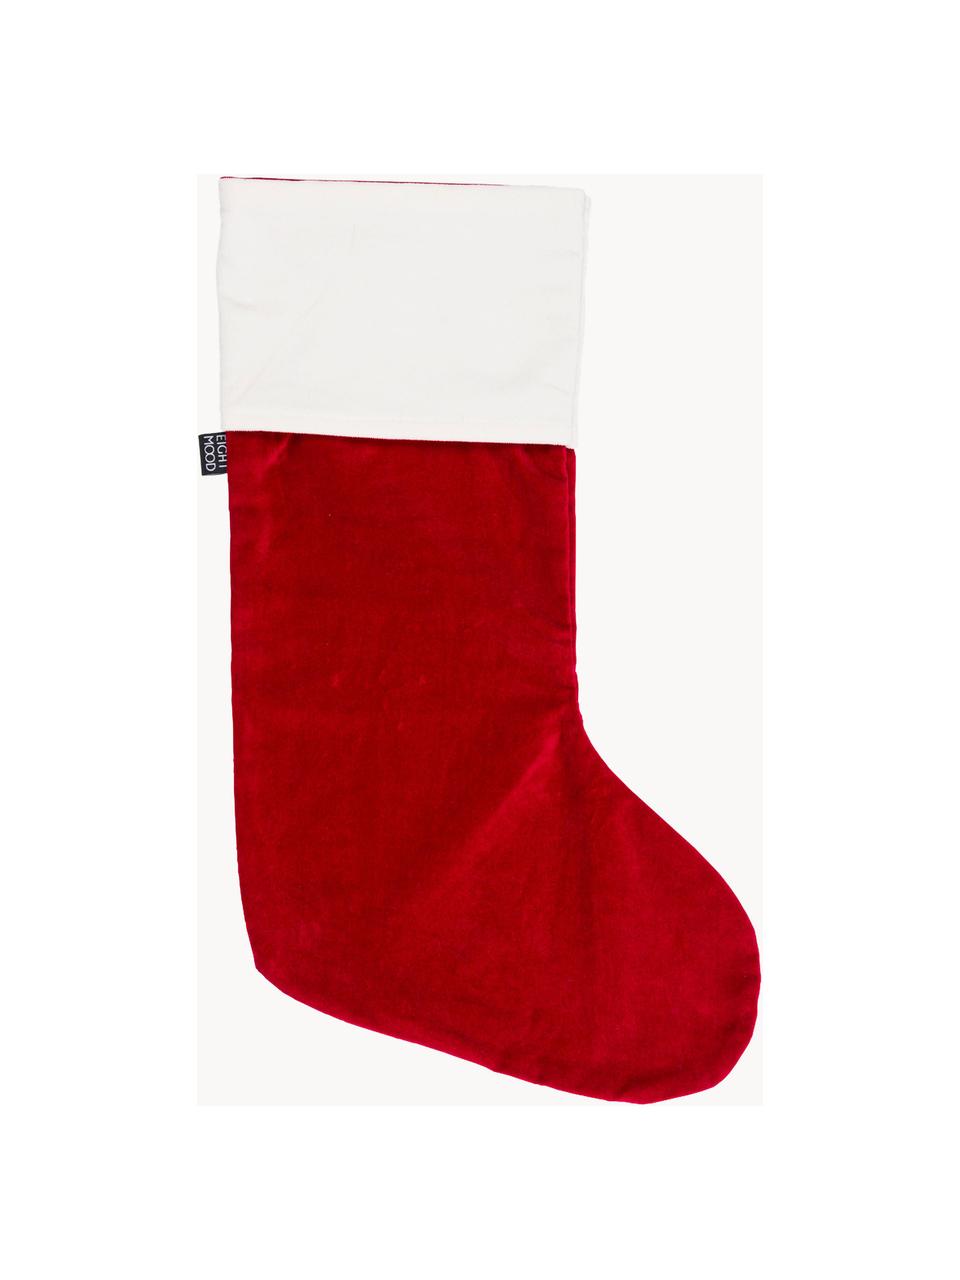 Vianočná pančucha Veronica, V 45 cm, Bavlna, Červená, biela, Š 25 x V 45 cm